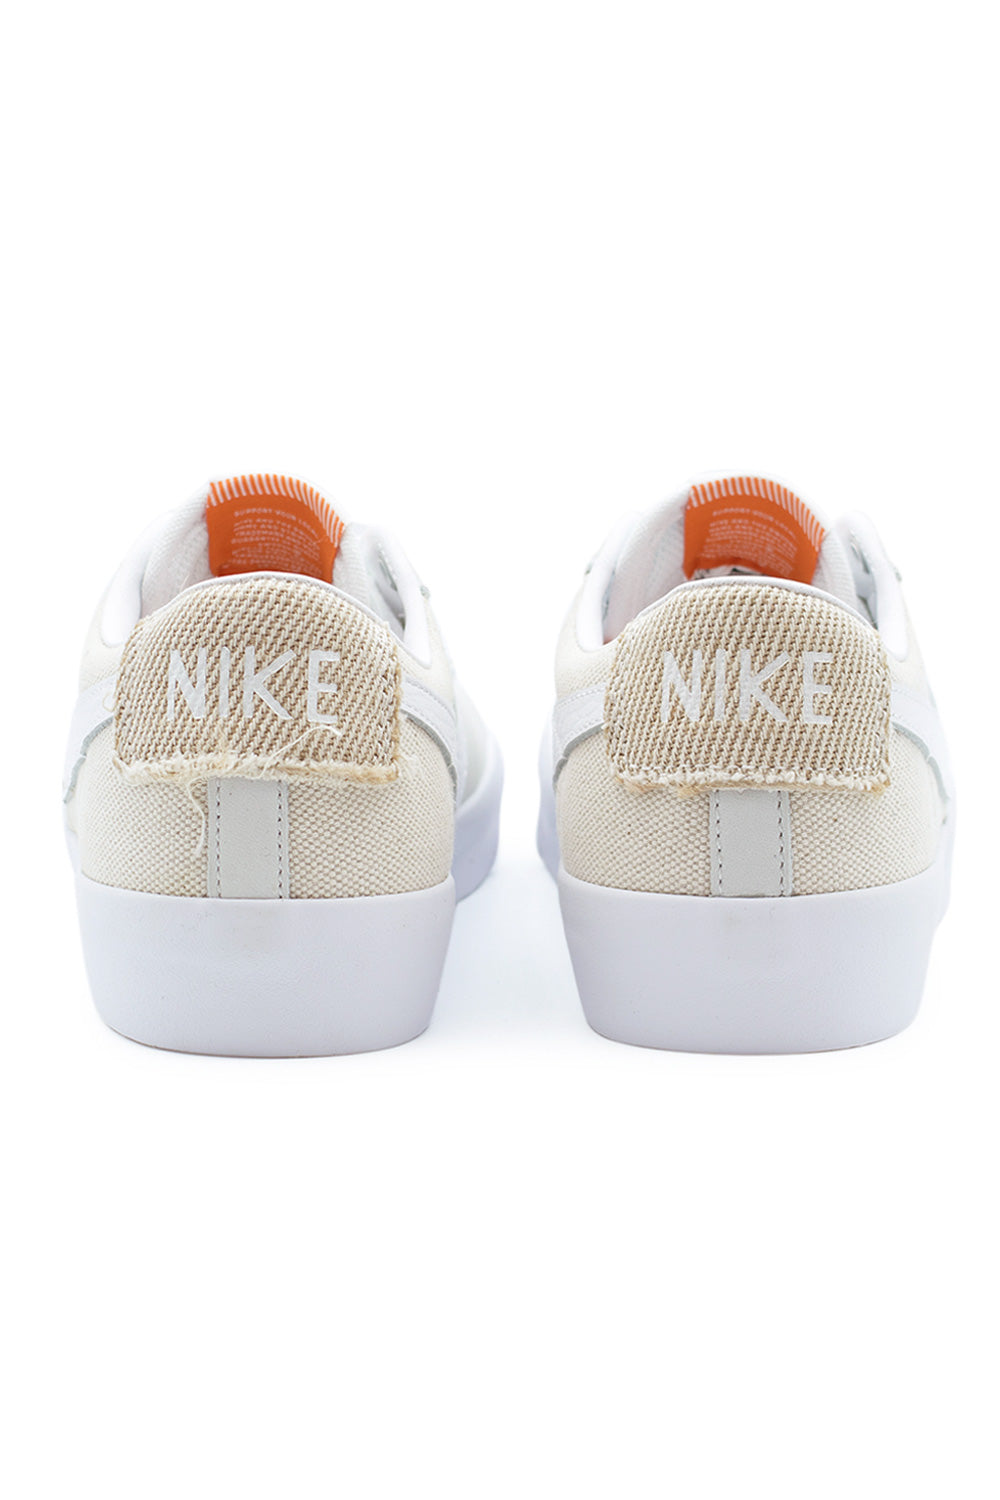 Nike SB Zoom Blazer Low Pro GT ISO Shoe (Orange Label) White / White / White / Summit White - BONKERS